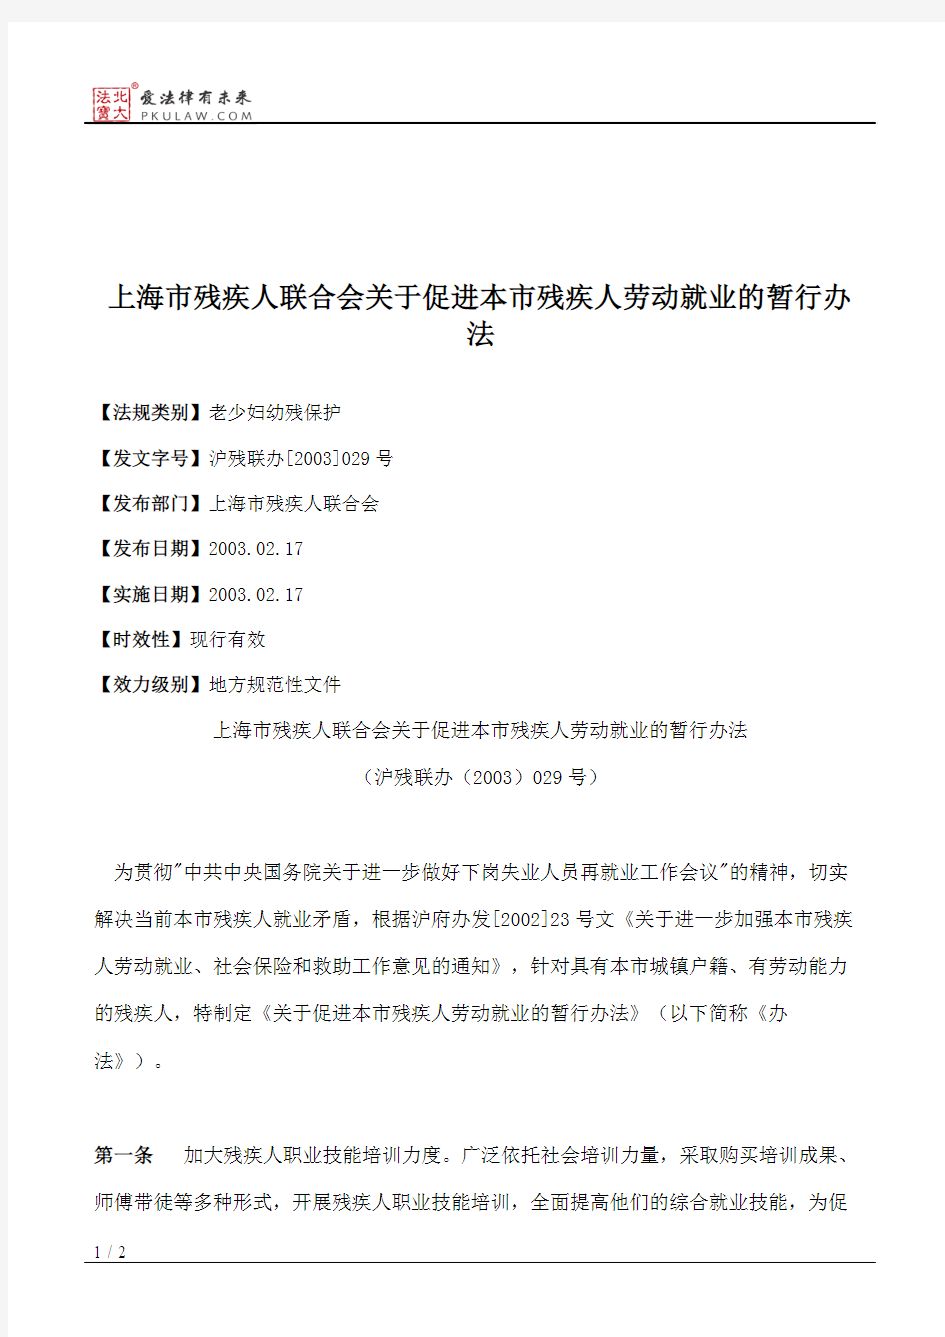 上海市残疾人联合会关于促进本市残疾人劳动就业的暂行办法